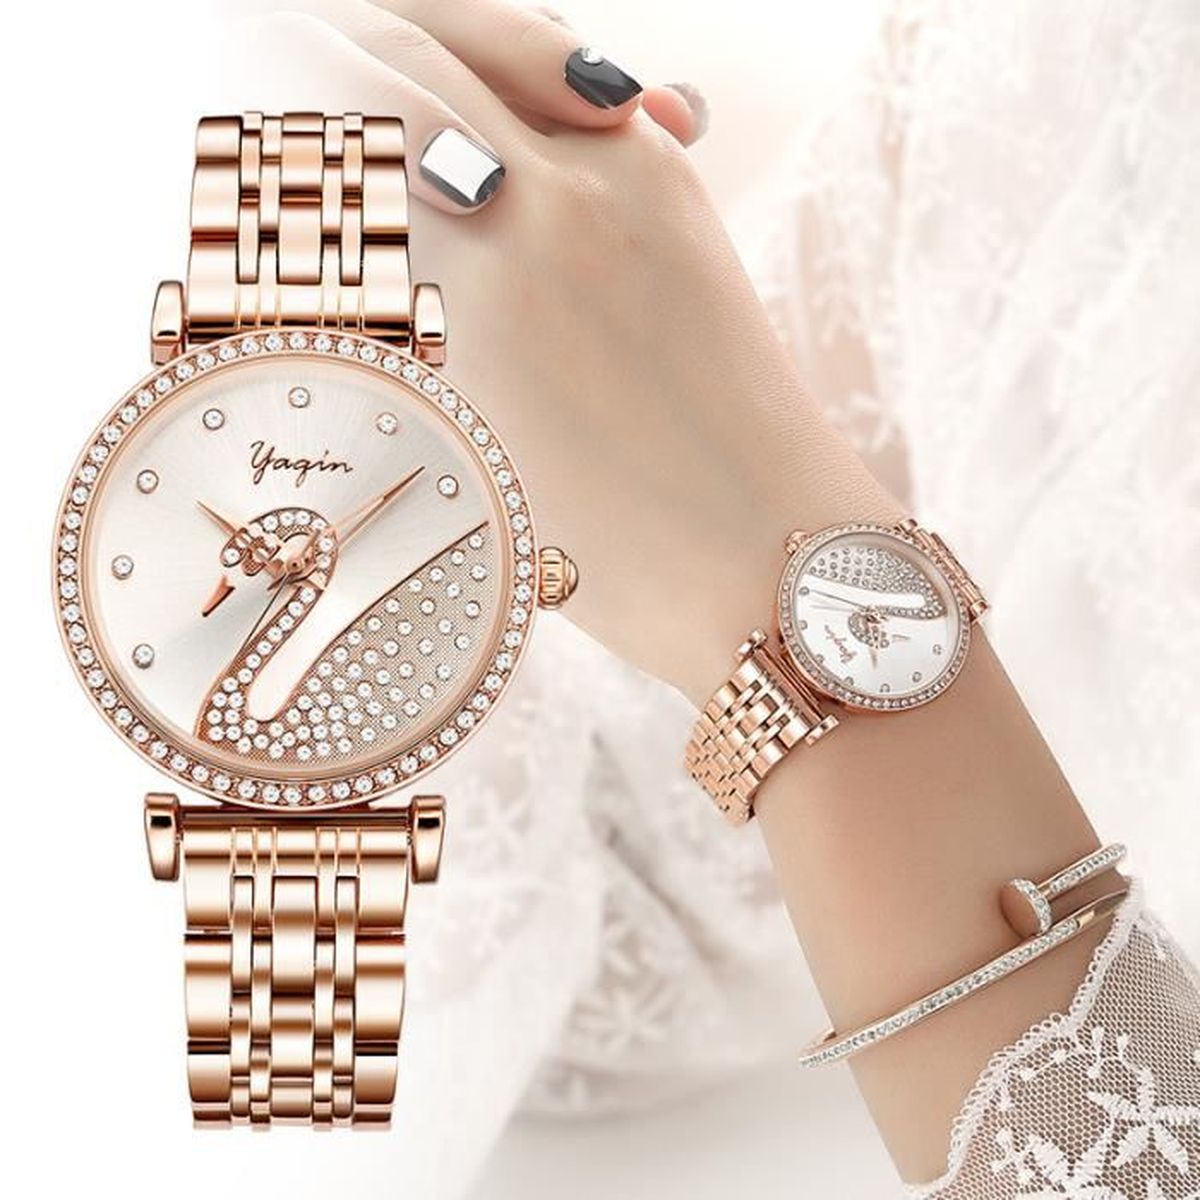 18K Or Blanc Finition 0.55 Ct Diamant Bracelet Jonc pour occasion spéciale